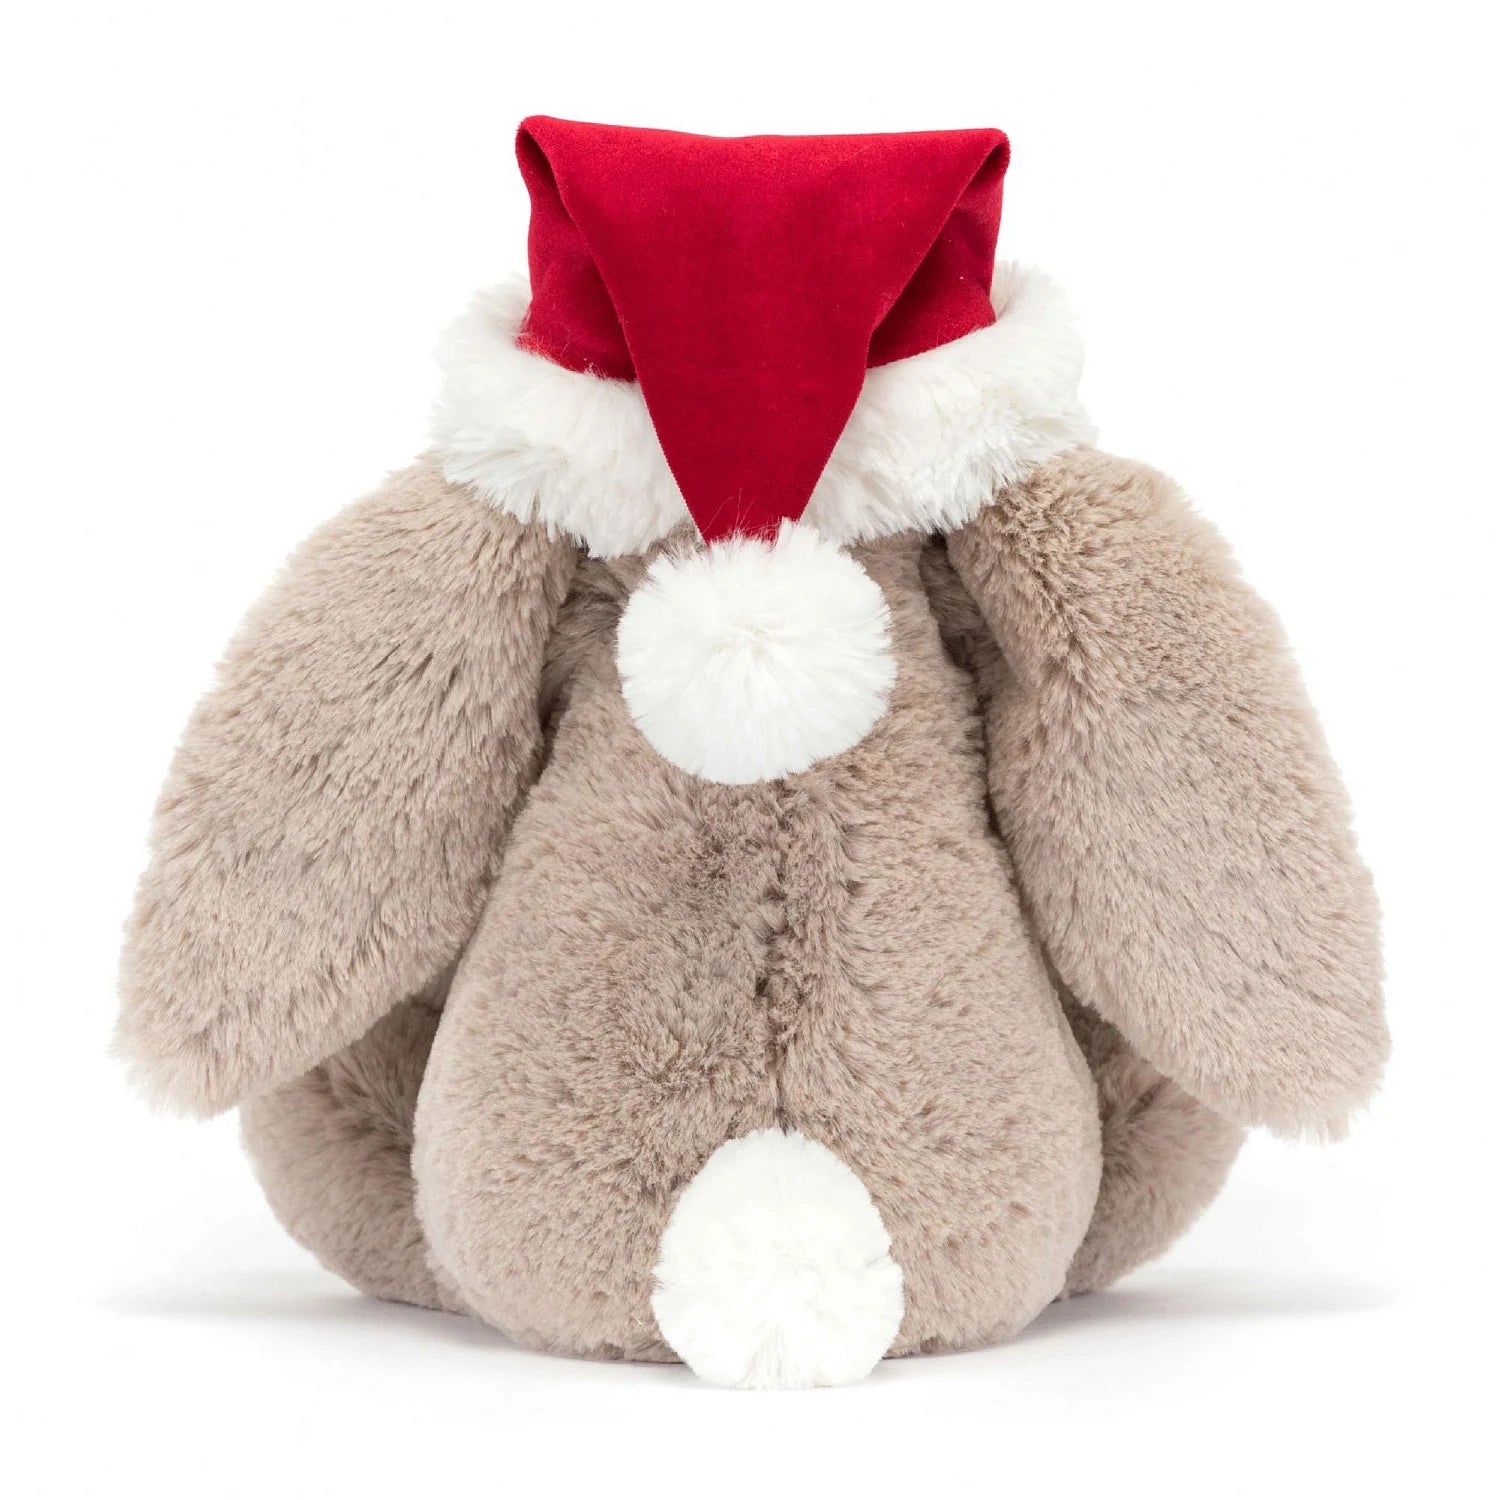 Bashful Christmas Bunny | Luxury baby gift | Unique gifts